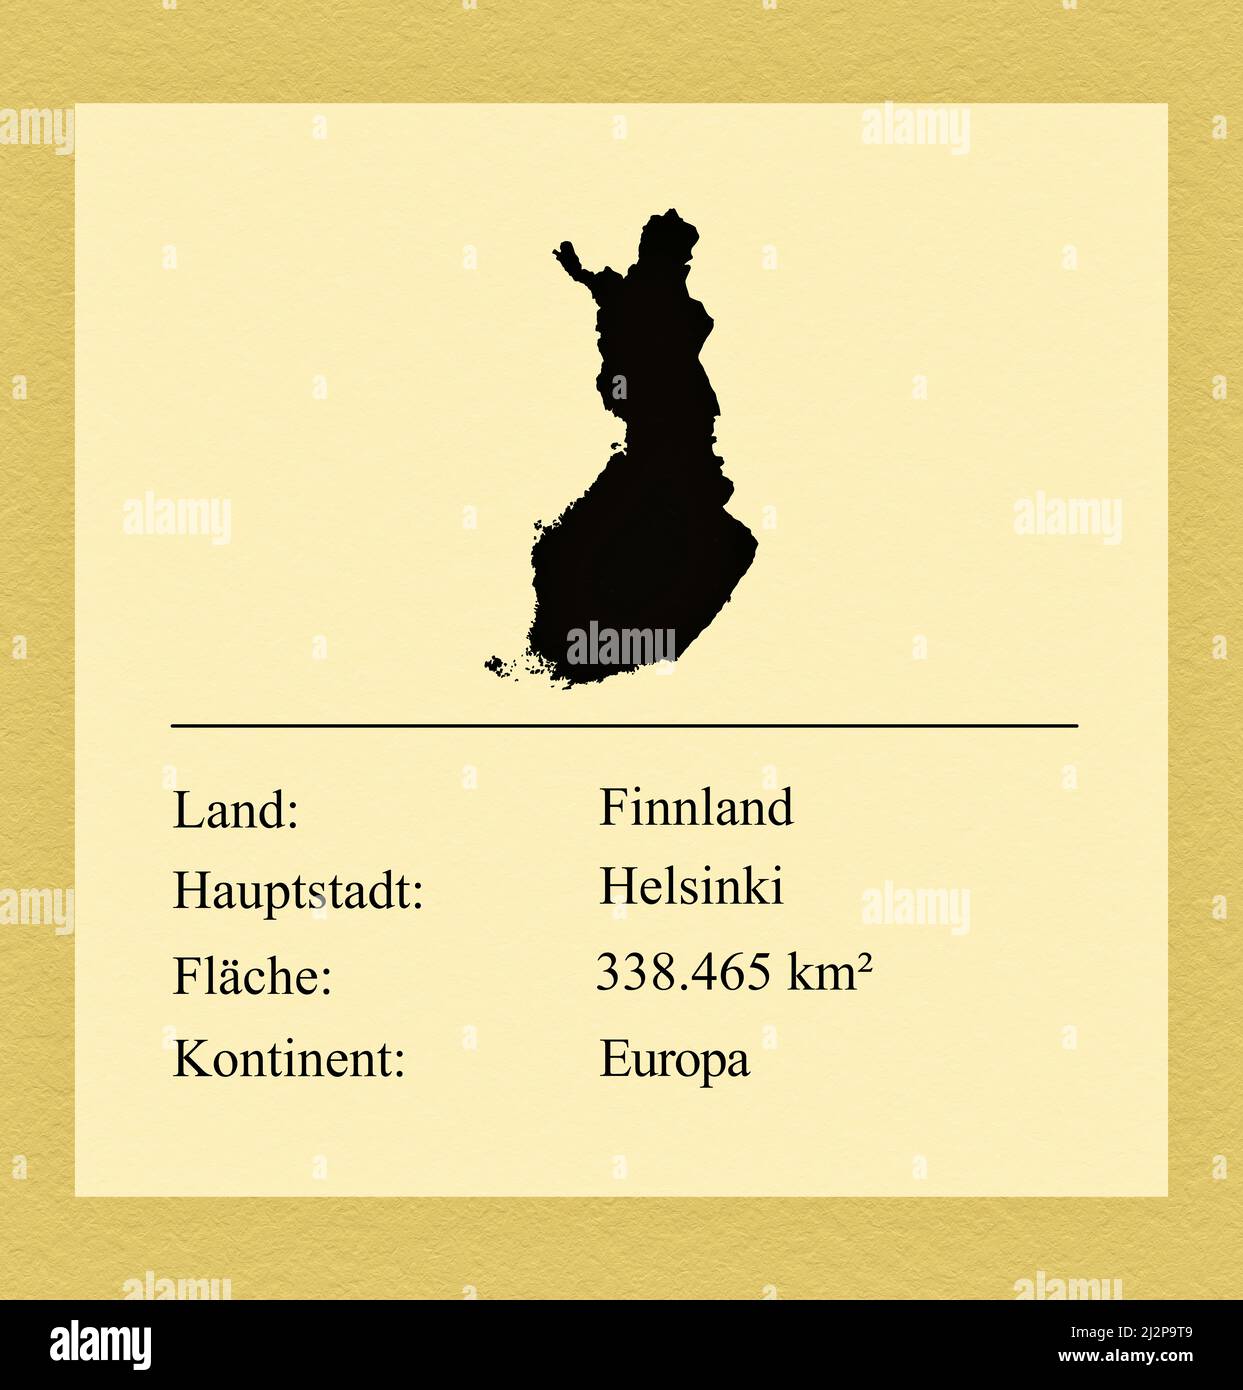 Umrisse des Landes Finnland, darunter ein kleiner Steckbrief mit Ländernamen, Hauptstadt, Fläche und Kontinent Stock Photo